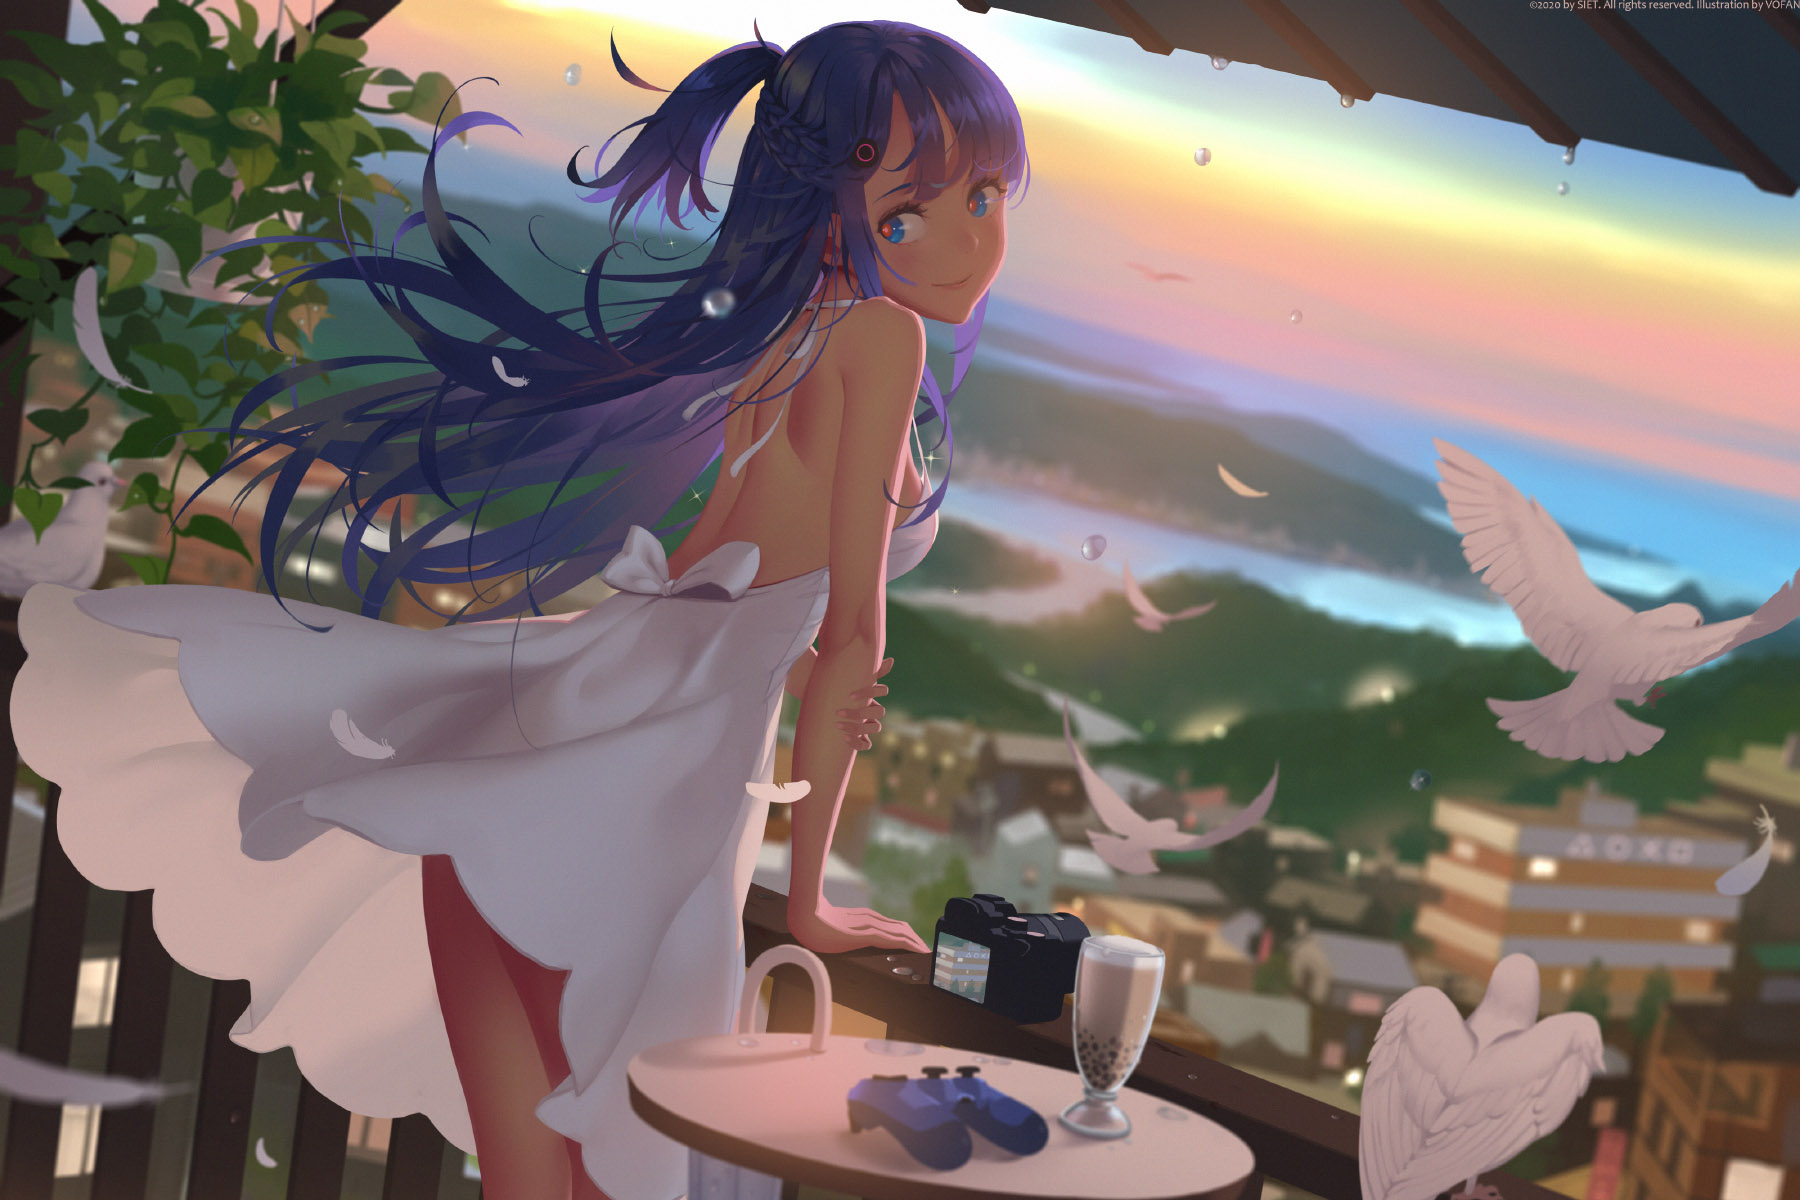 Anime 1800x1200 vofan anime anime girls blue hair blue eyes smiling dress sun dress landscape